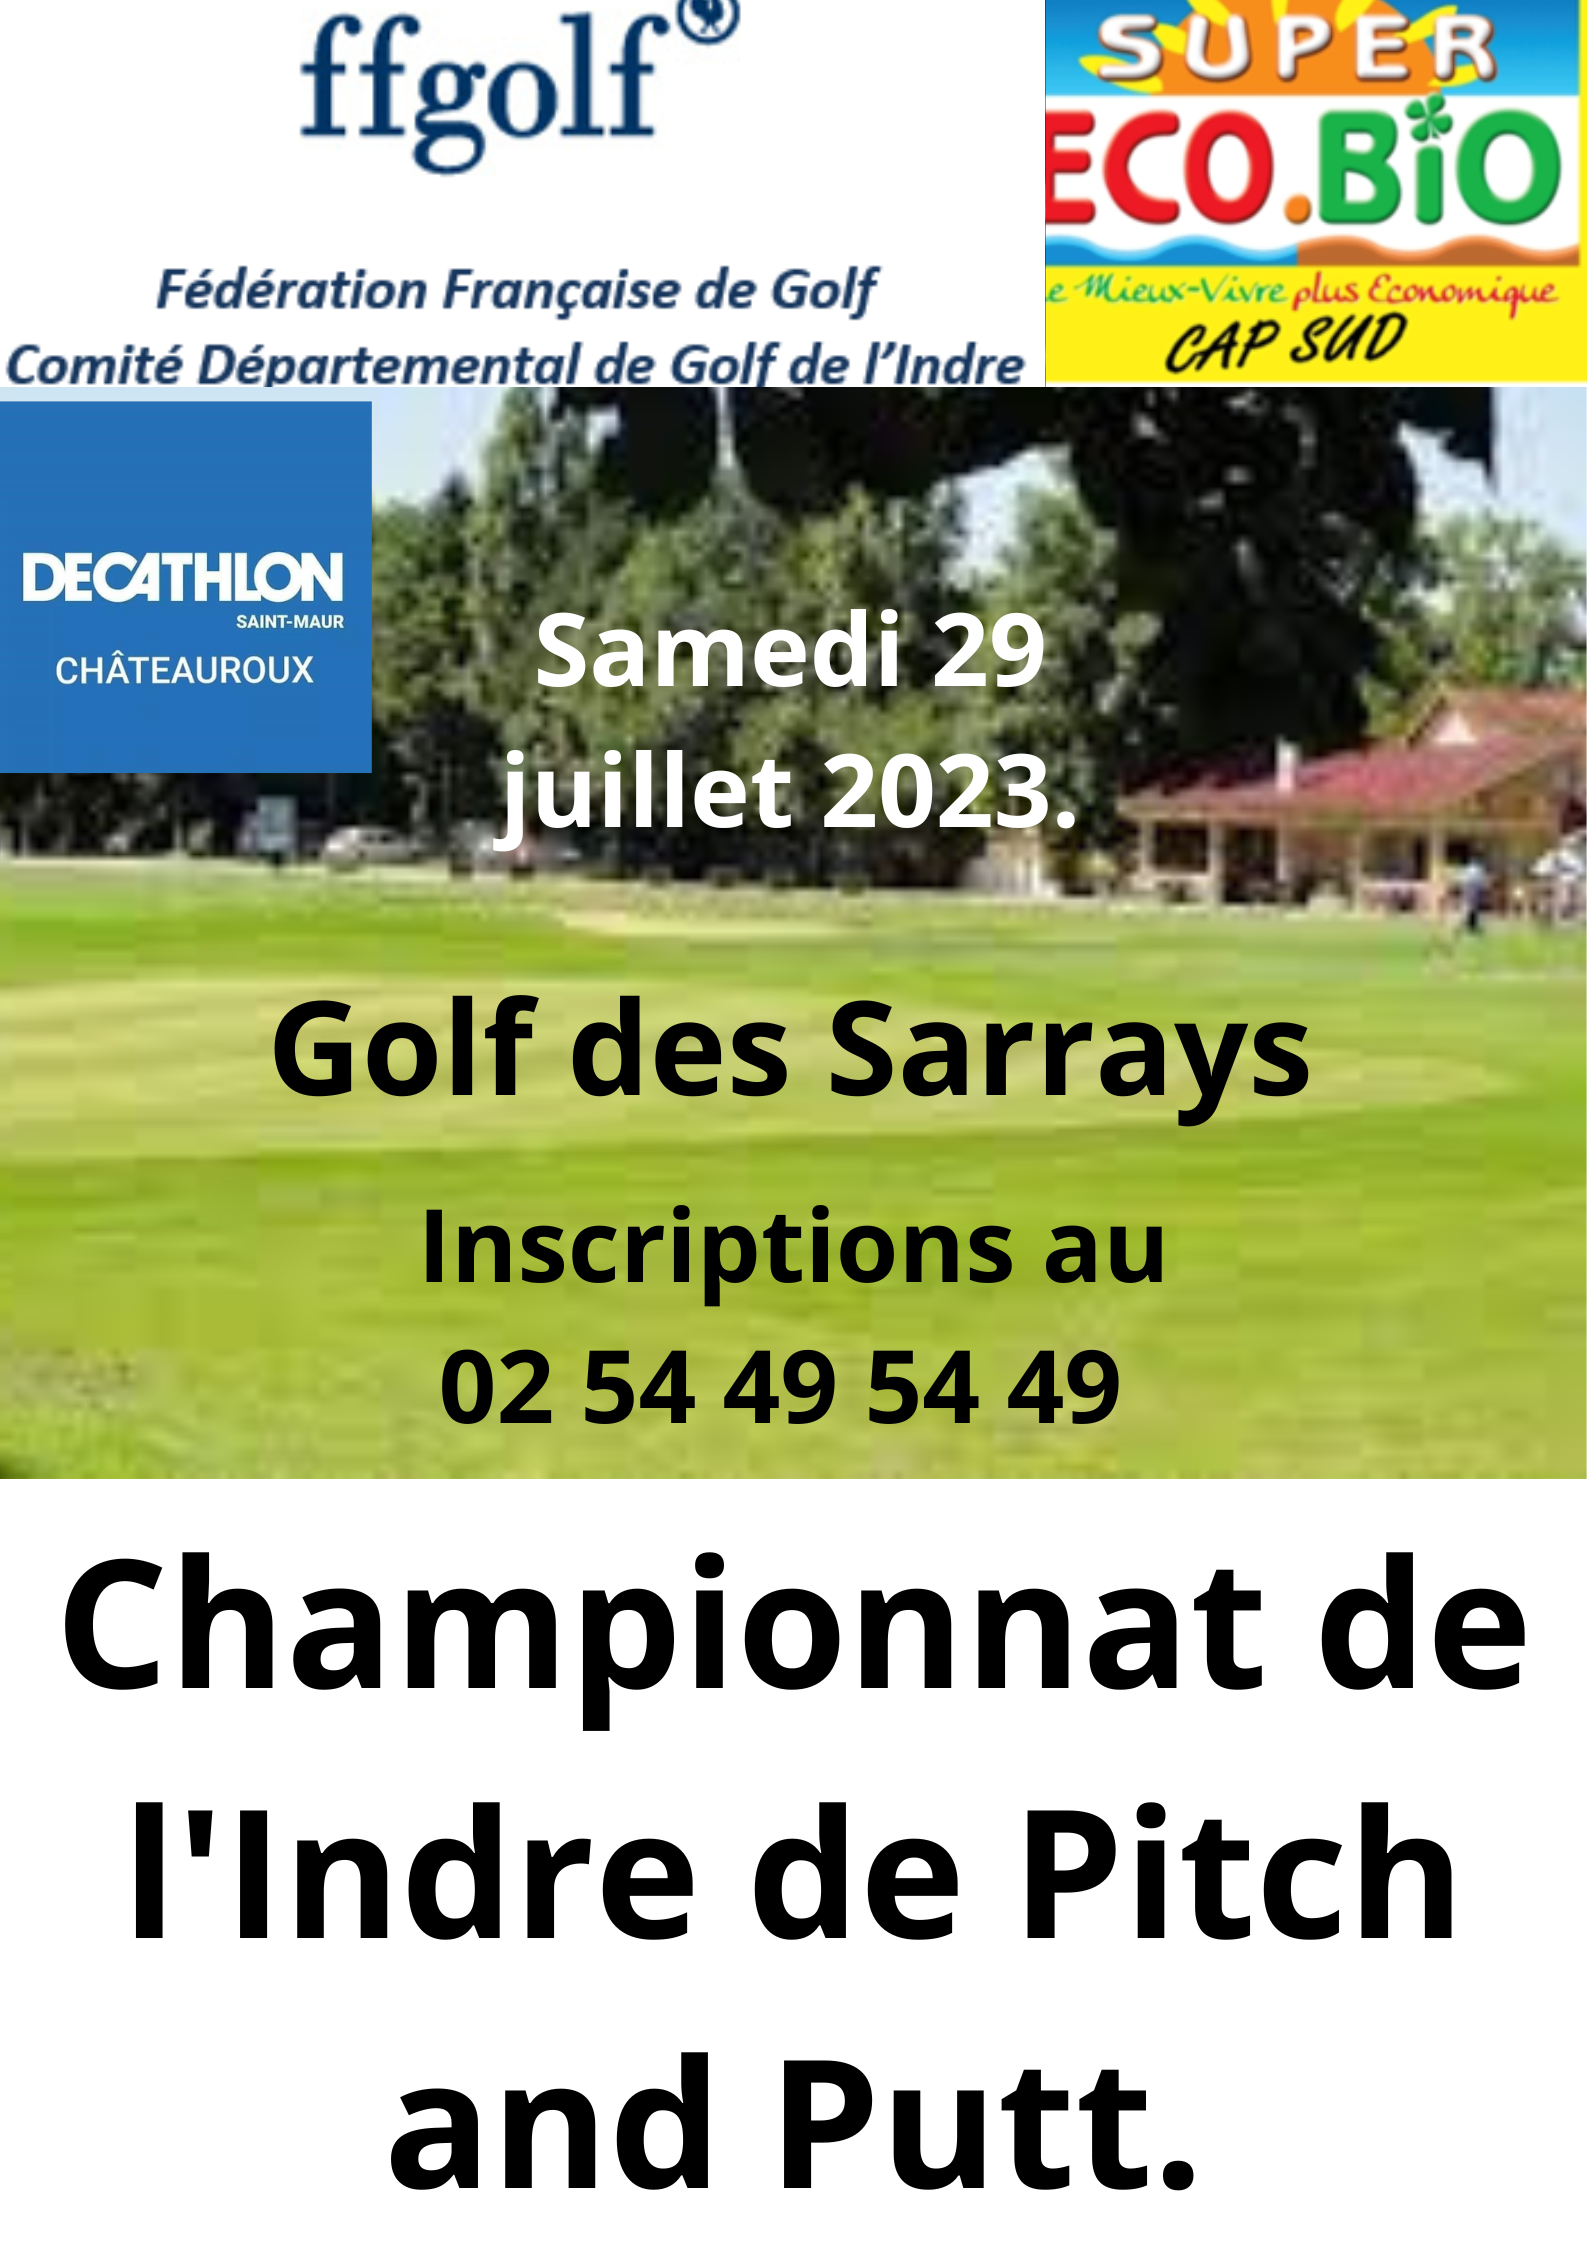 29/07/2023 Championnat de l'Indre de Pitch and Putt